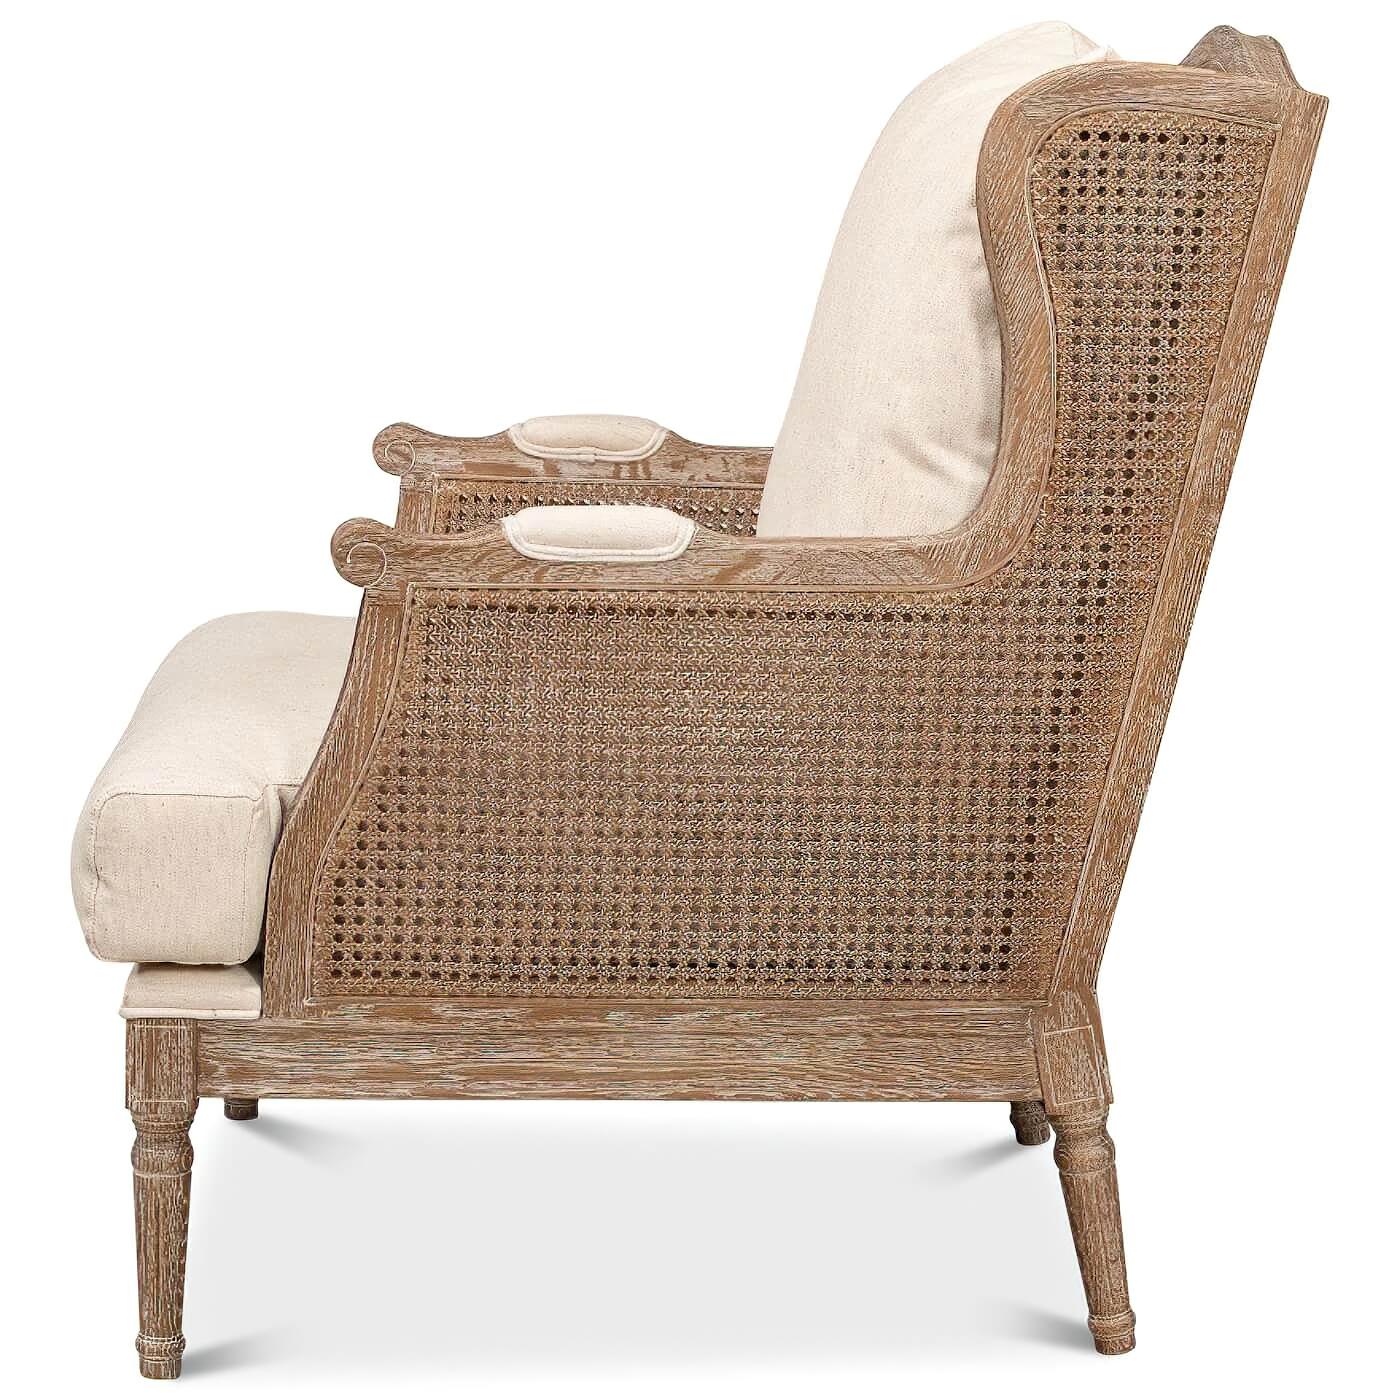 Fauteuil à oreilles de style Louis XVI, blanchi à la chaux, avec dossier et côtés en rotin. Cette magnifique chaise est dotée d'une assise et d'un dossier en lin ivoire. Elle est fabriquée en chêne blanchi et reçoit une finition transitionnelle